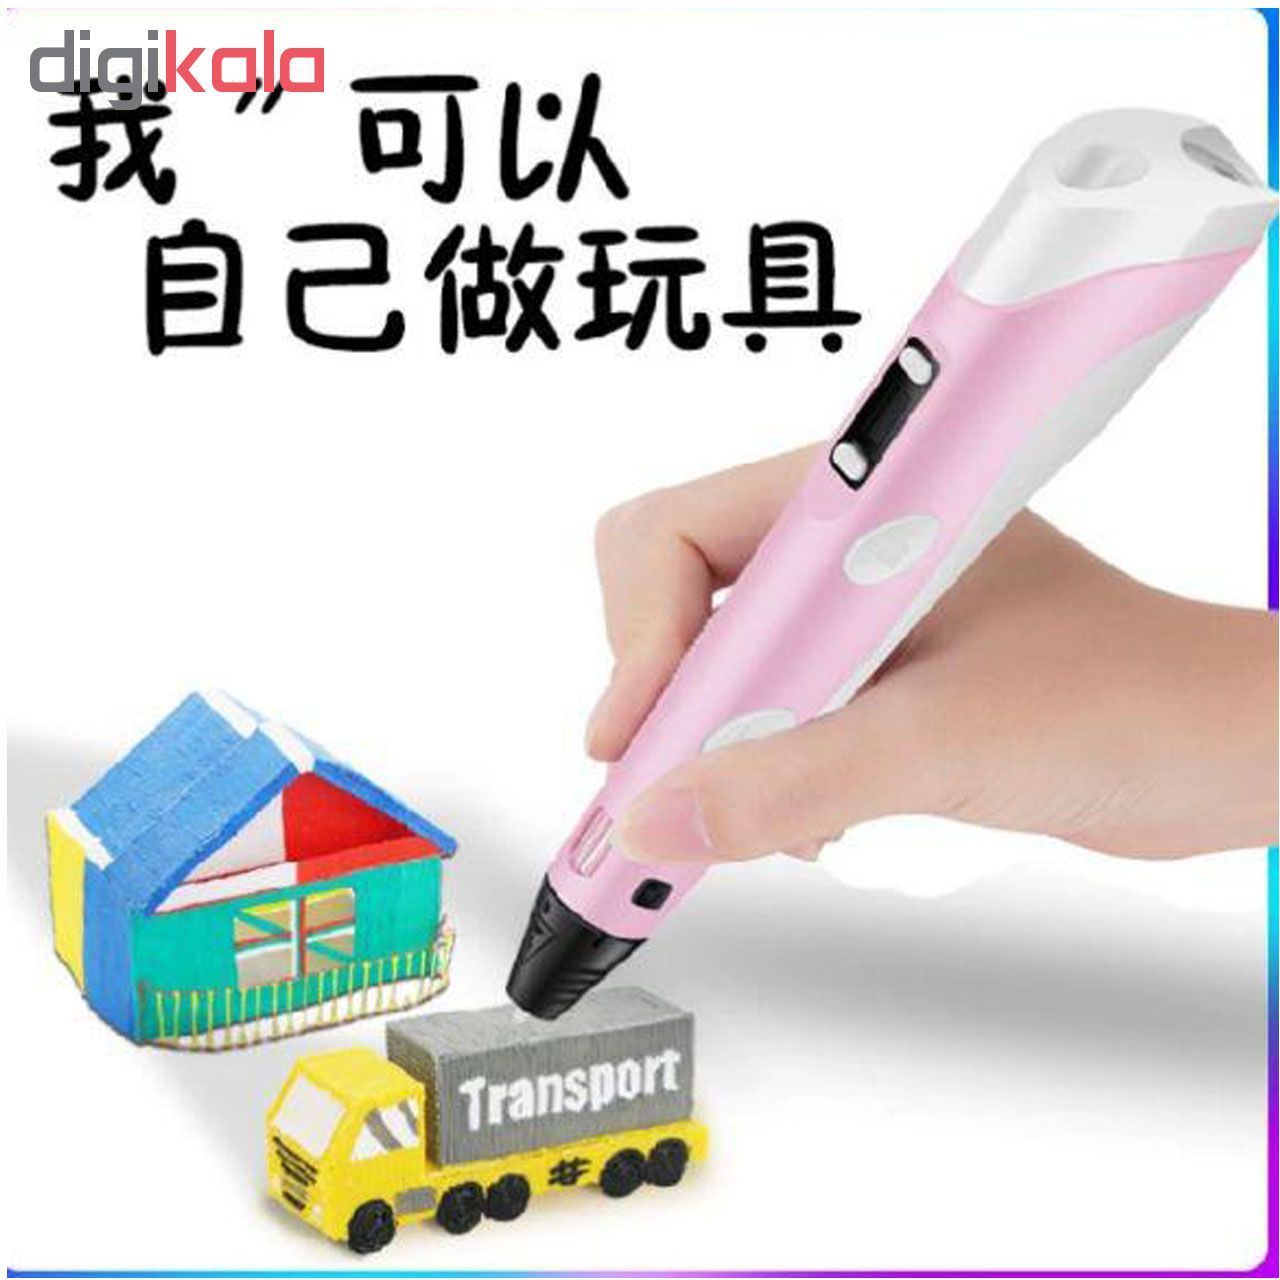 قلم طراحی سه بعدی کیو وای اچ مدل MA-K3